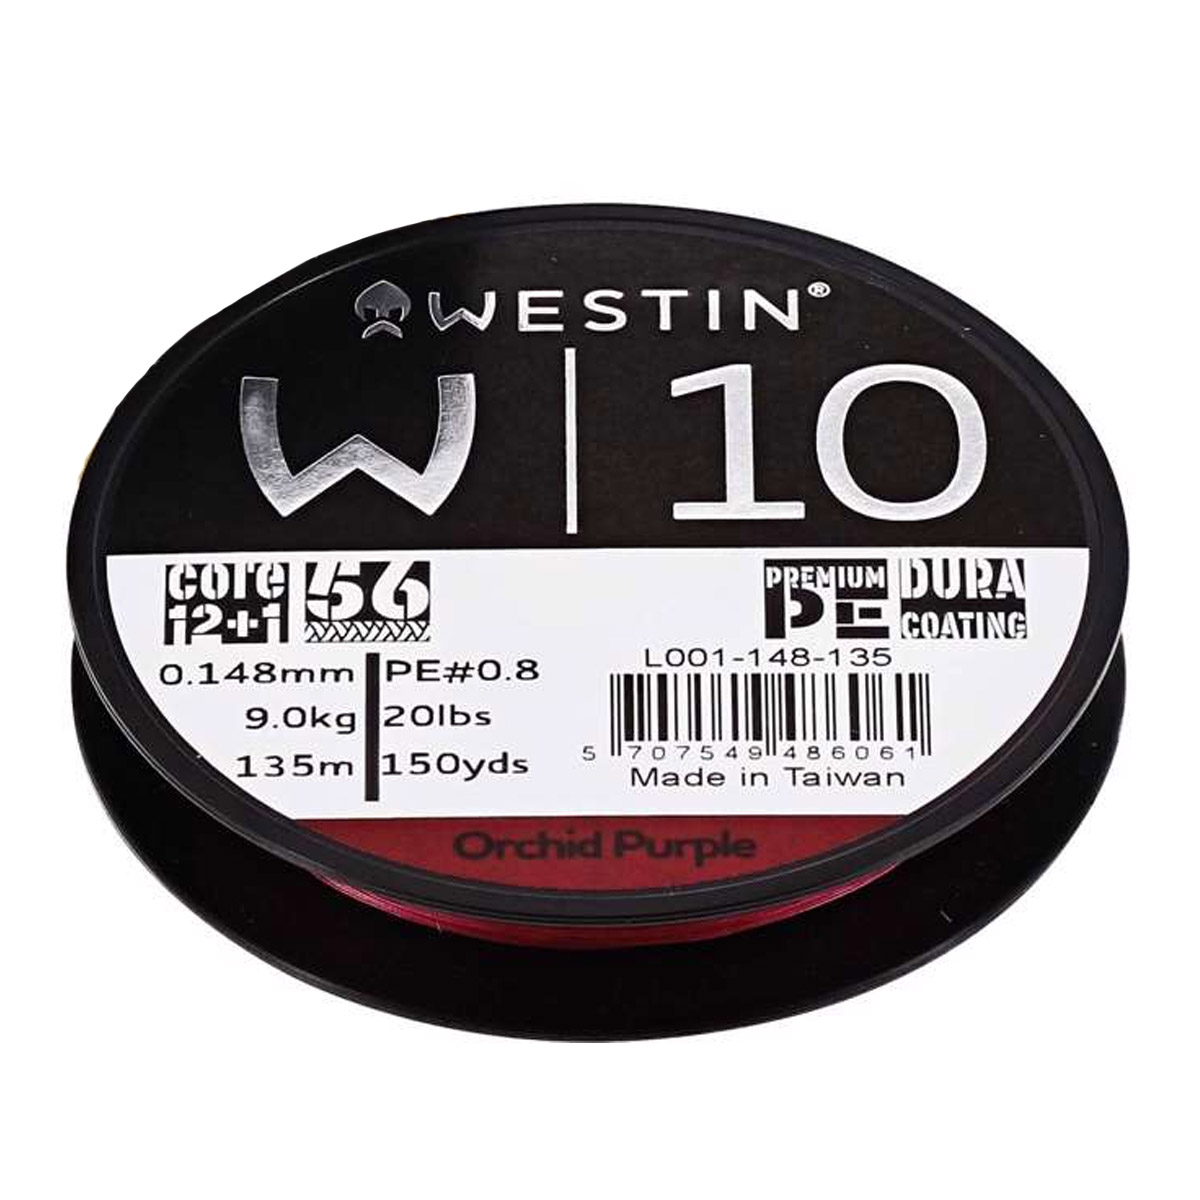 Westin W10 13 Braid 135 M Orchid Purple  -  0.08 mm -  0.10 mm -  0.305 mm -  0.33 mm -  0.128 mm -  0.148 mm -  0.235 mm -  0.26 mm -  0.285 mm -  0.165  mm -  0.205 mm